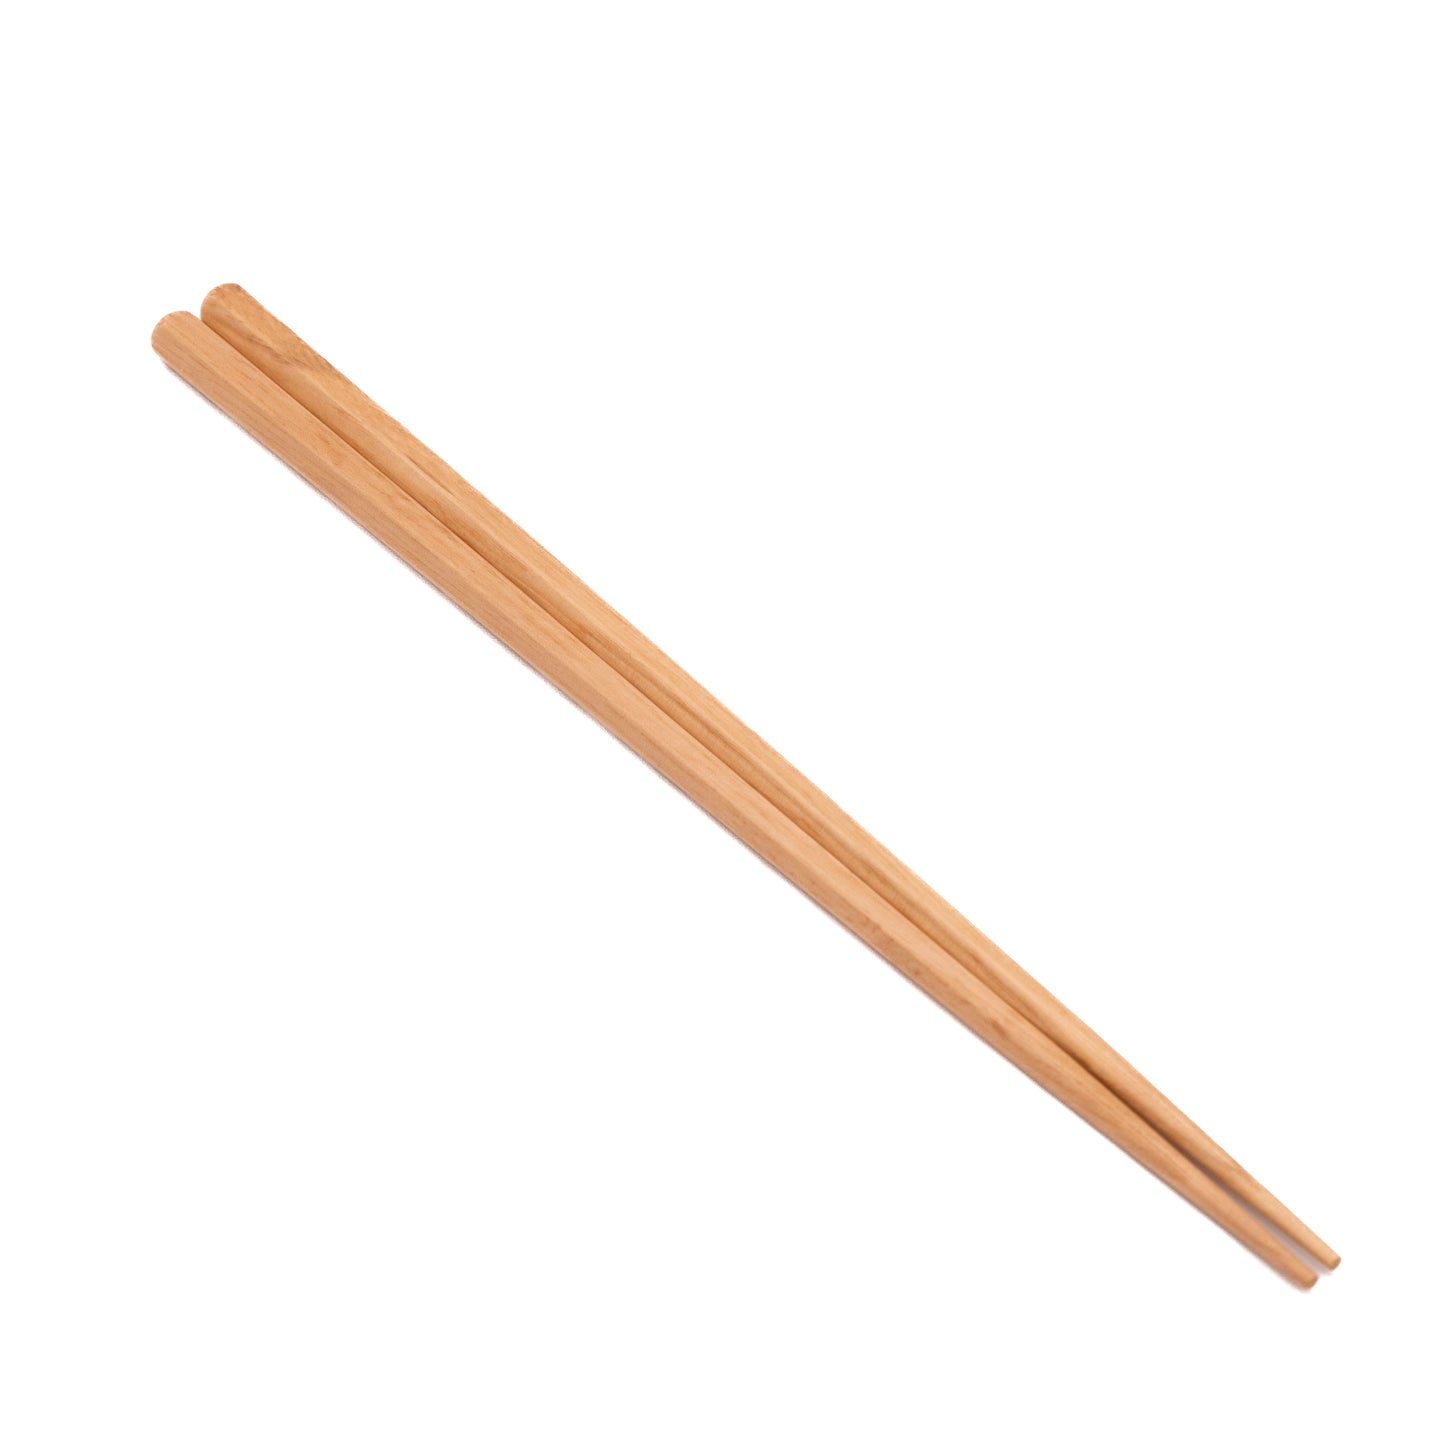 Wooden Hexagonal Chopsticks